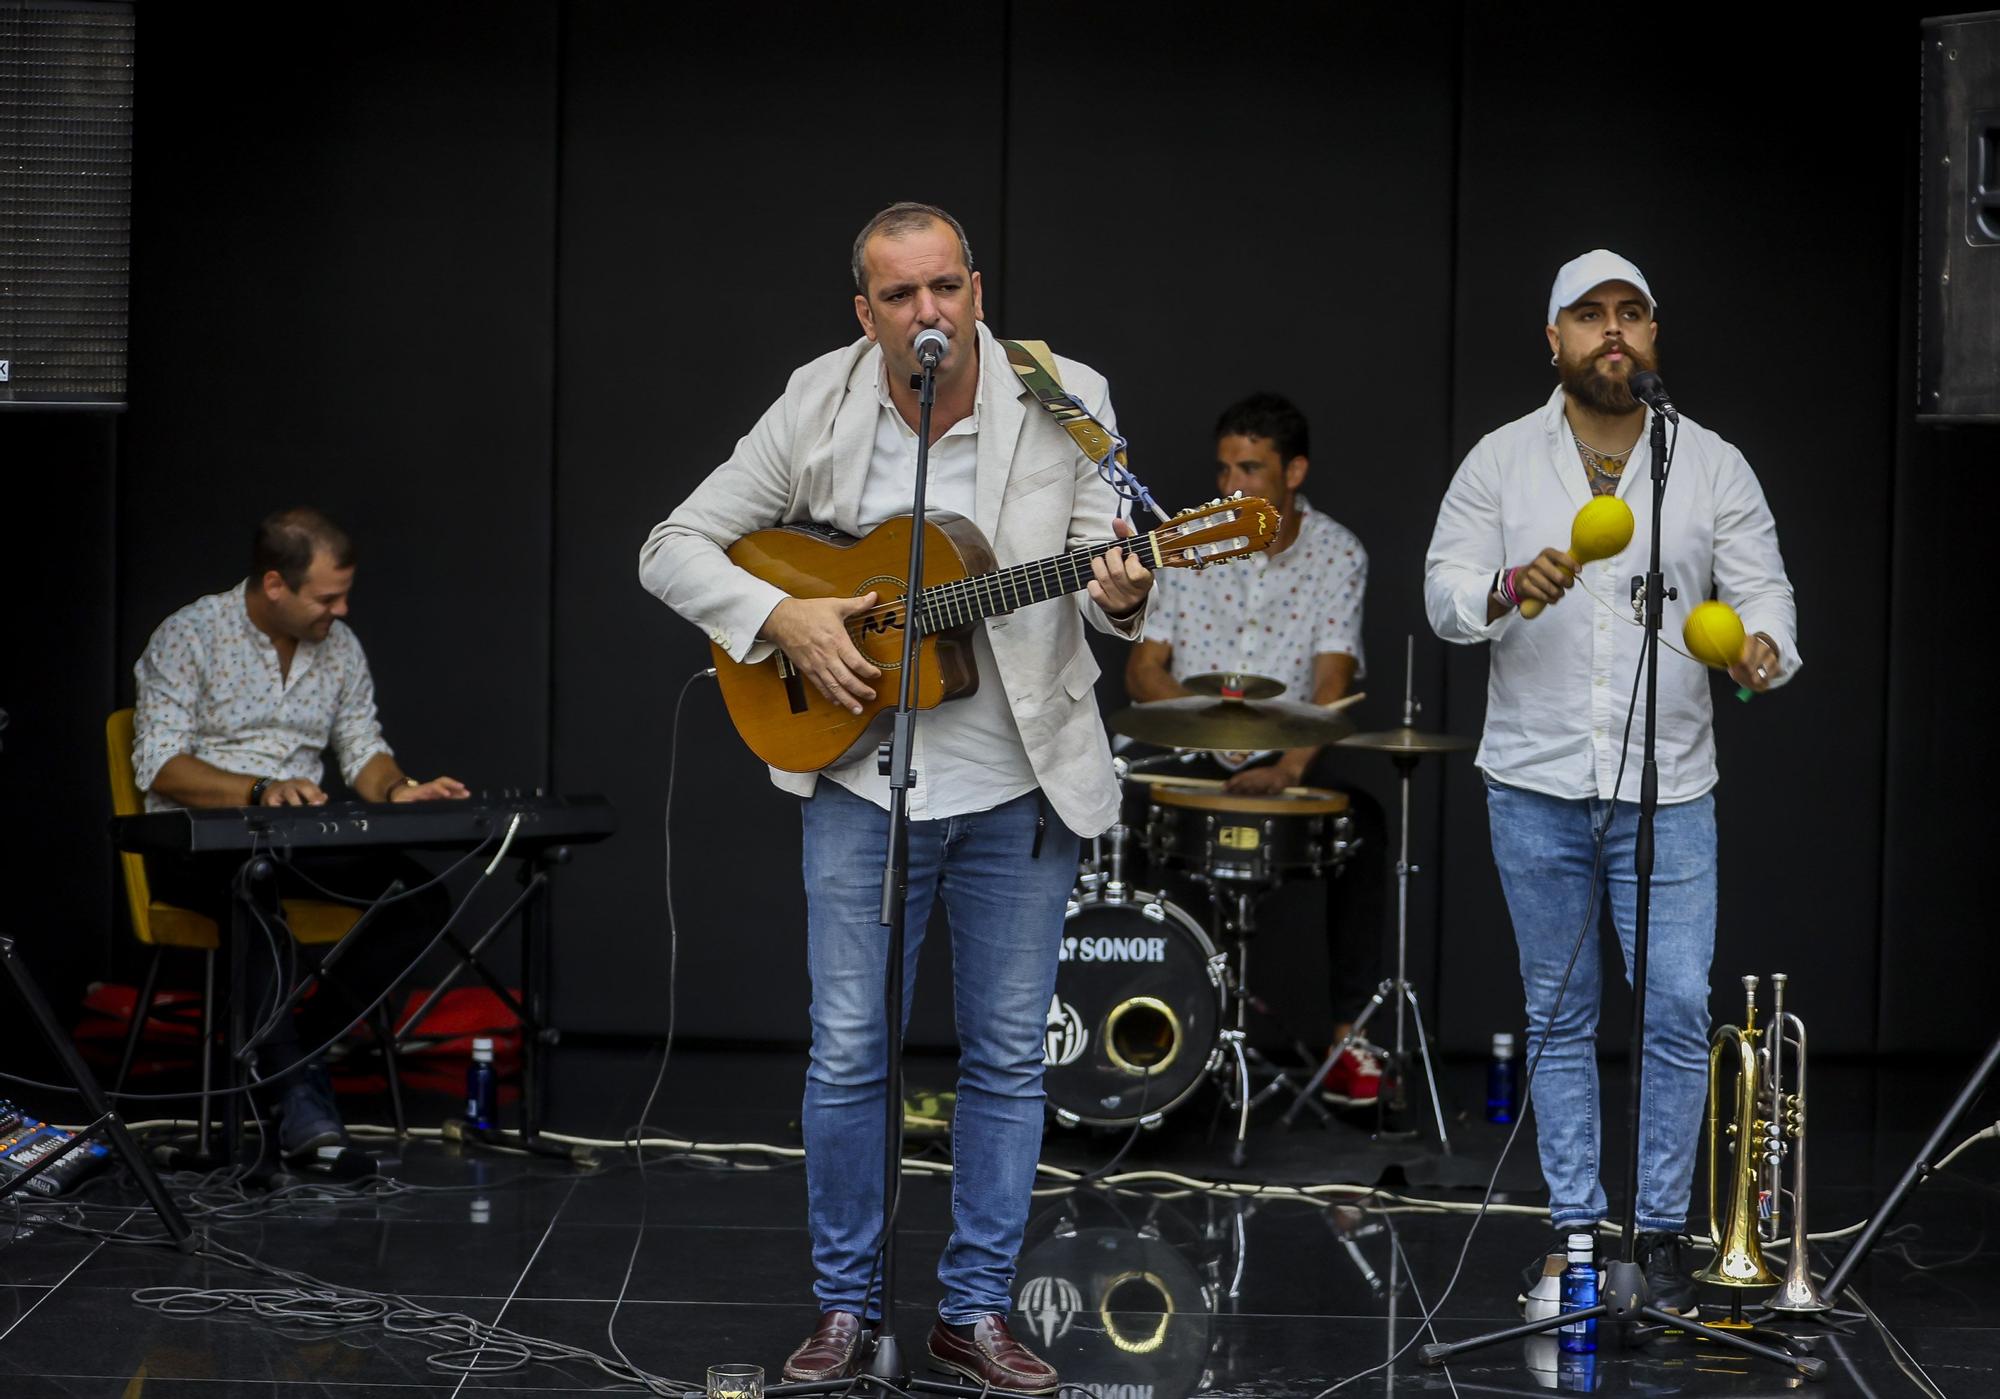 El cantante finalista del programa La Voz, Javi Moya y su grupo de pop flamenco ameniz� la zona Business de Tendido �nico en el ADDA.jpg